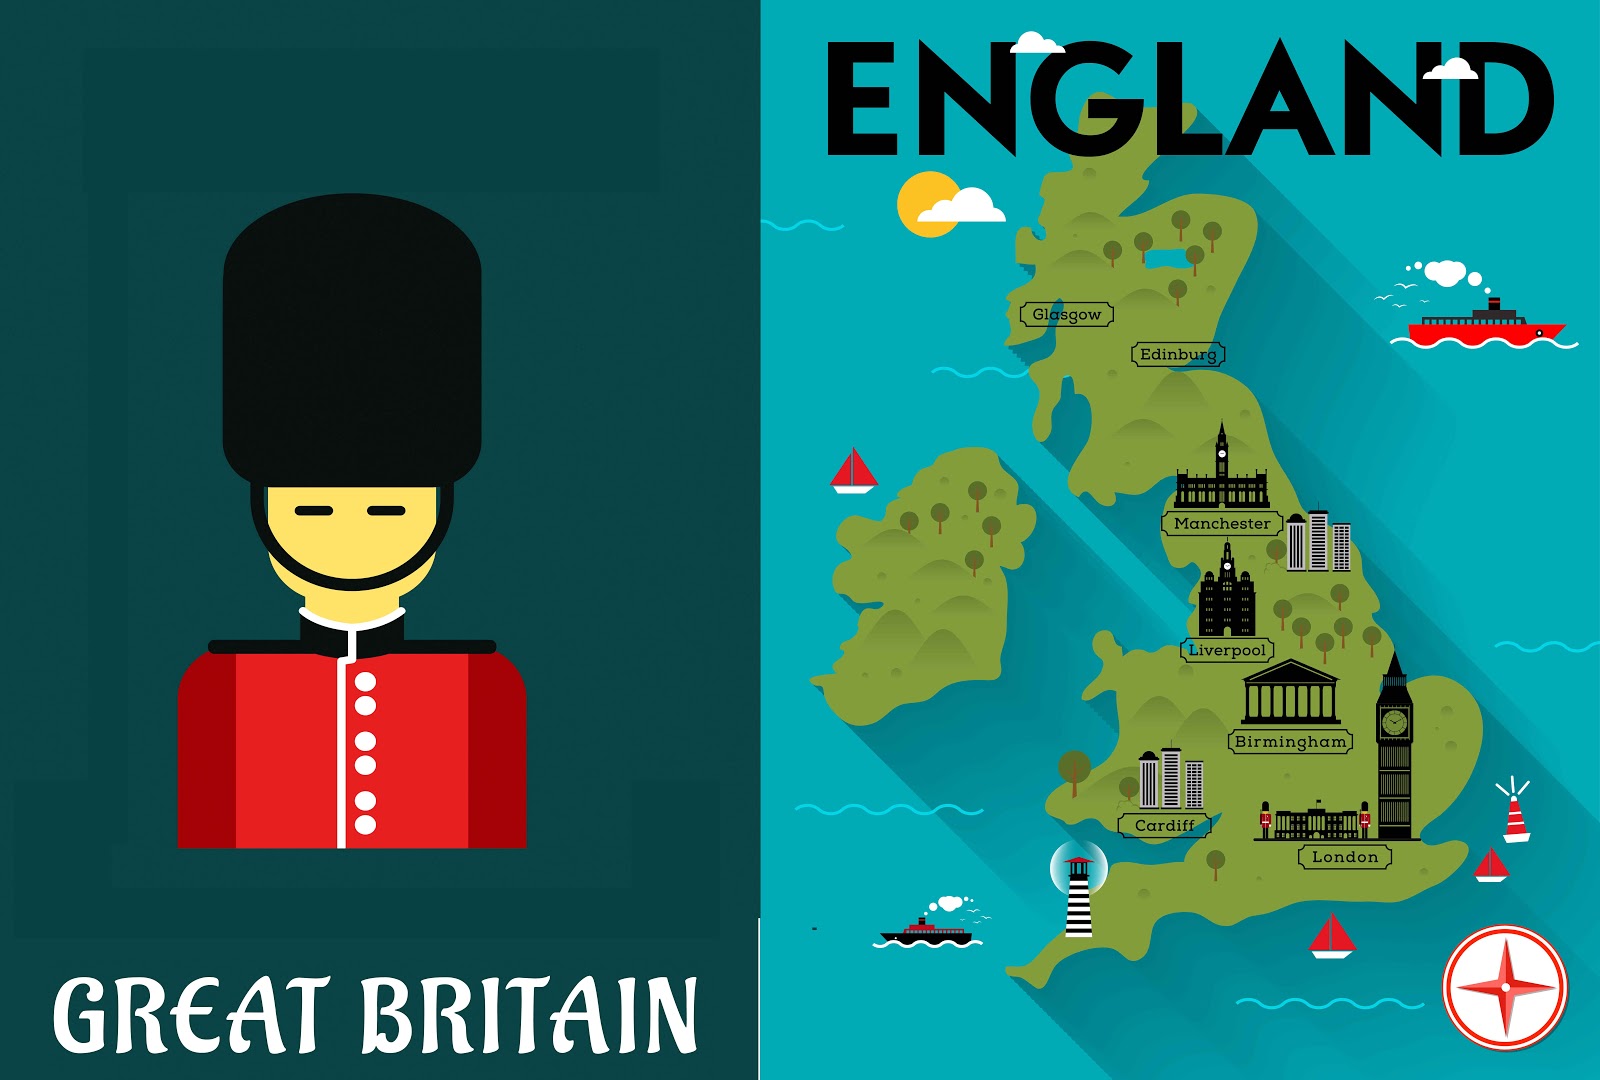 Reino Unido, Gran Bretaña, Inglaterra: ¿es todo lo mismo? - El Blog de